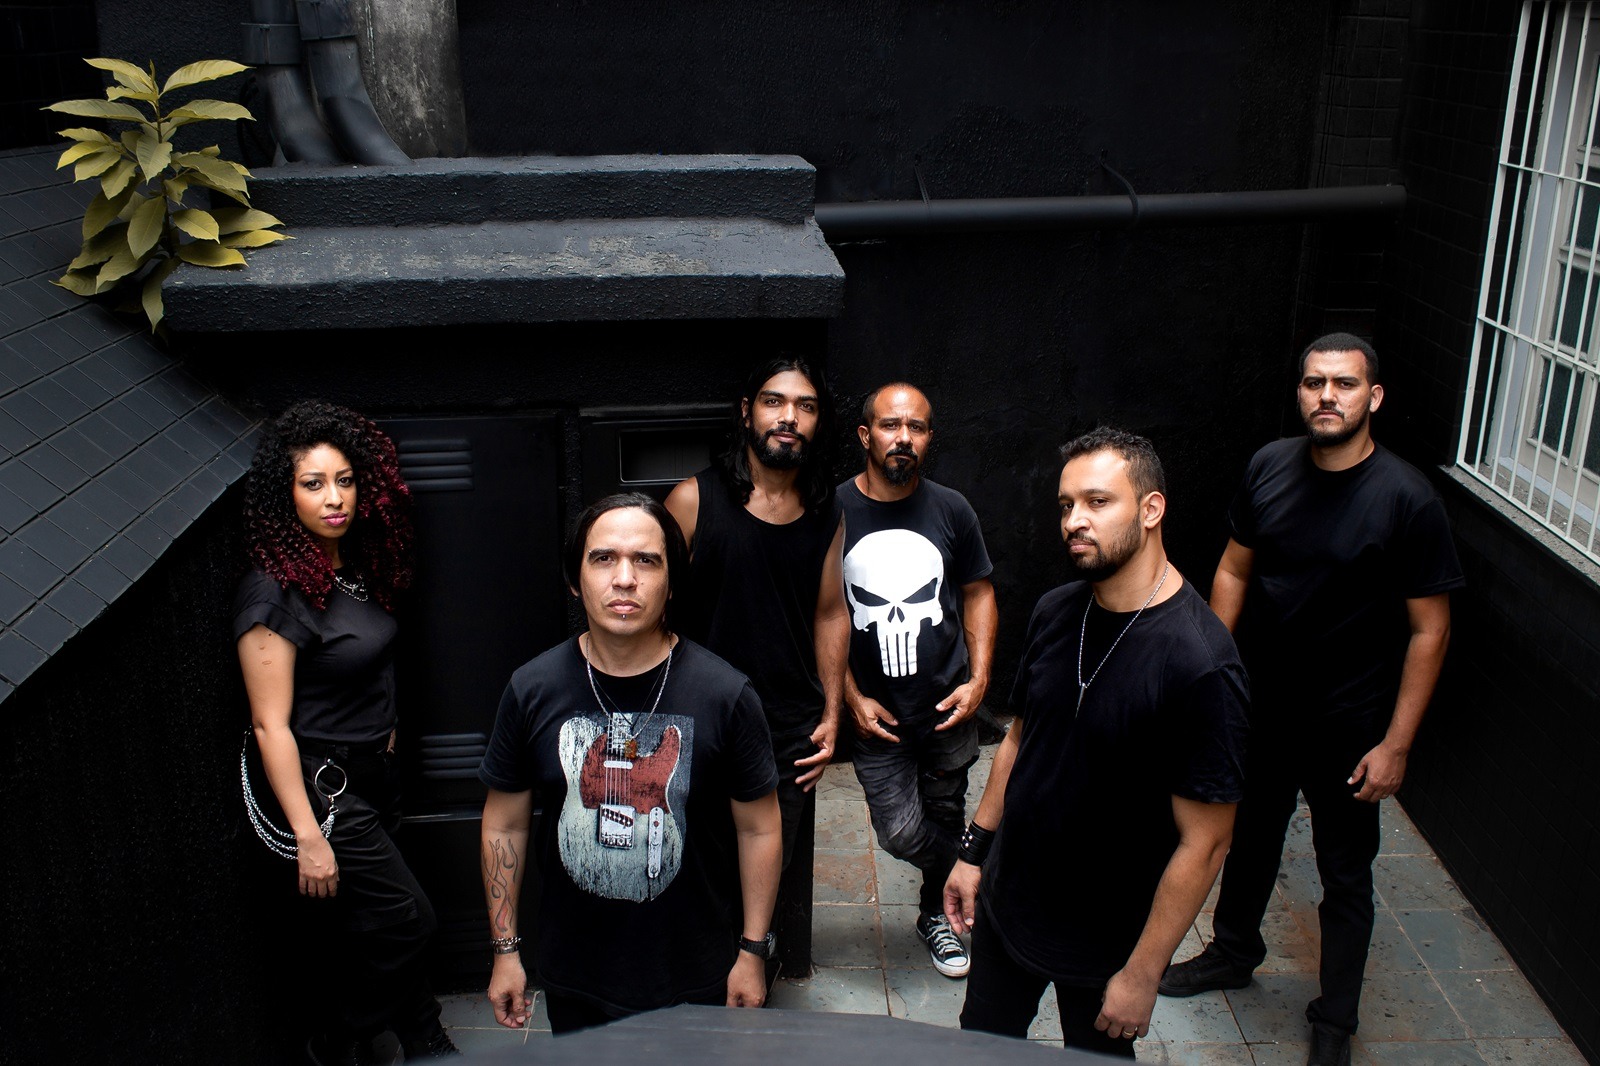 Banda Valência fortalece a cena do rock com “Missio Dei”, single sobre o sacrifício de Jesus